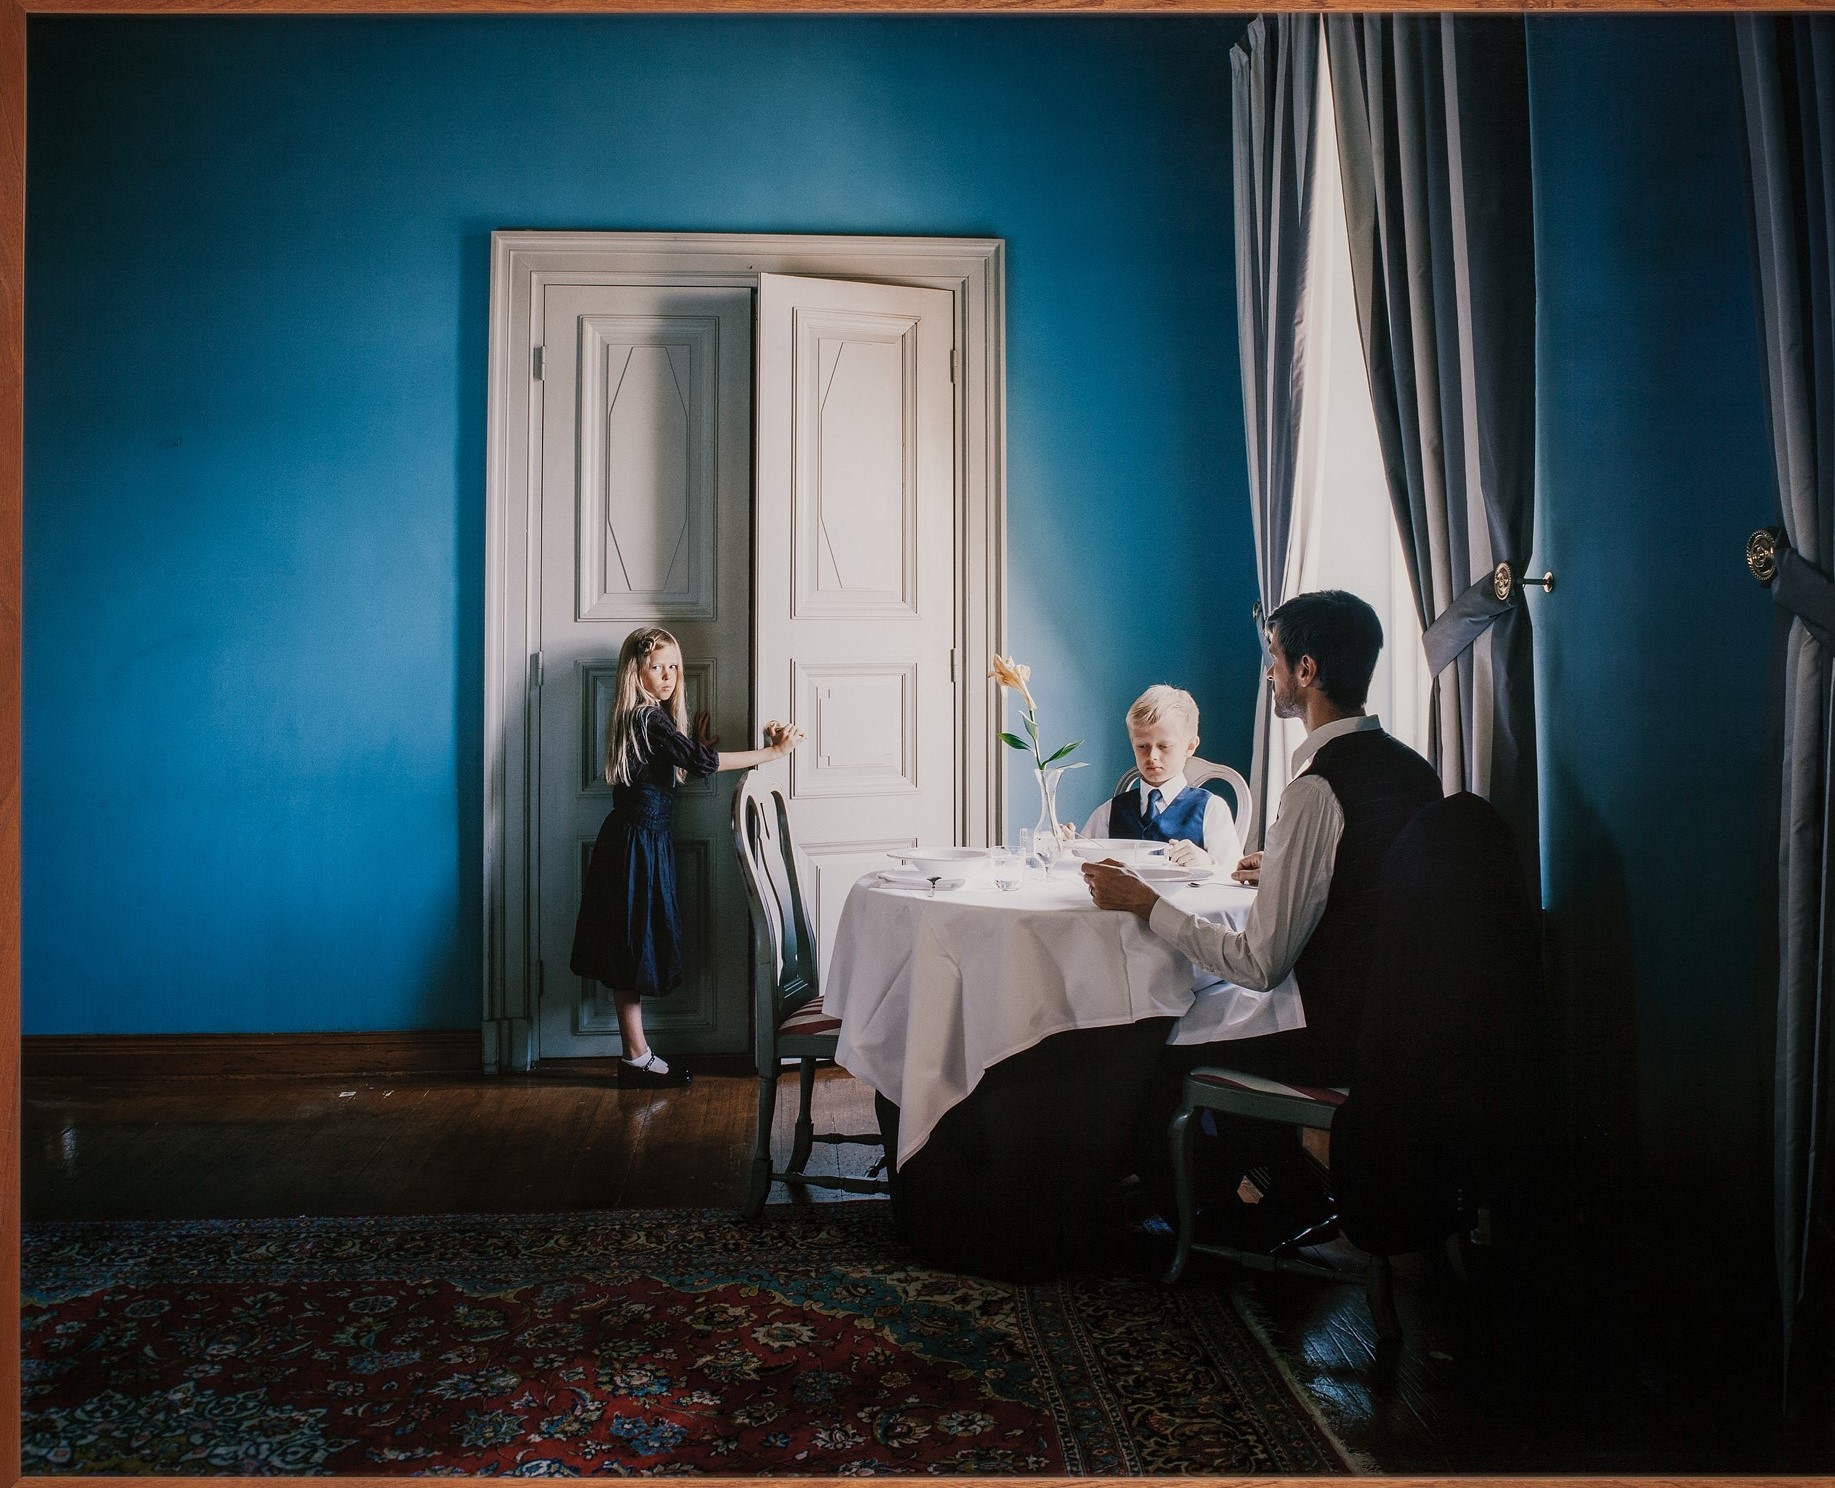 Siniseinäisessä huoneessa mies ja poika istuvat valkoisella pöytäliinalla peitetyn pyöreän pöydän ääressä. Heillä on kauluspaidat ja solmiot. Takimmaisella seinällä on ovi, jota nuori tyttö sinisessä mekossa on avaamassa. Hän katsoo kameraan, mies katsoo tyttöä. 